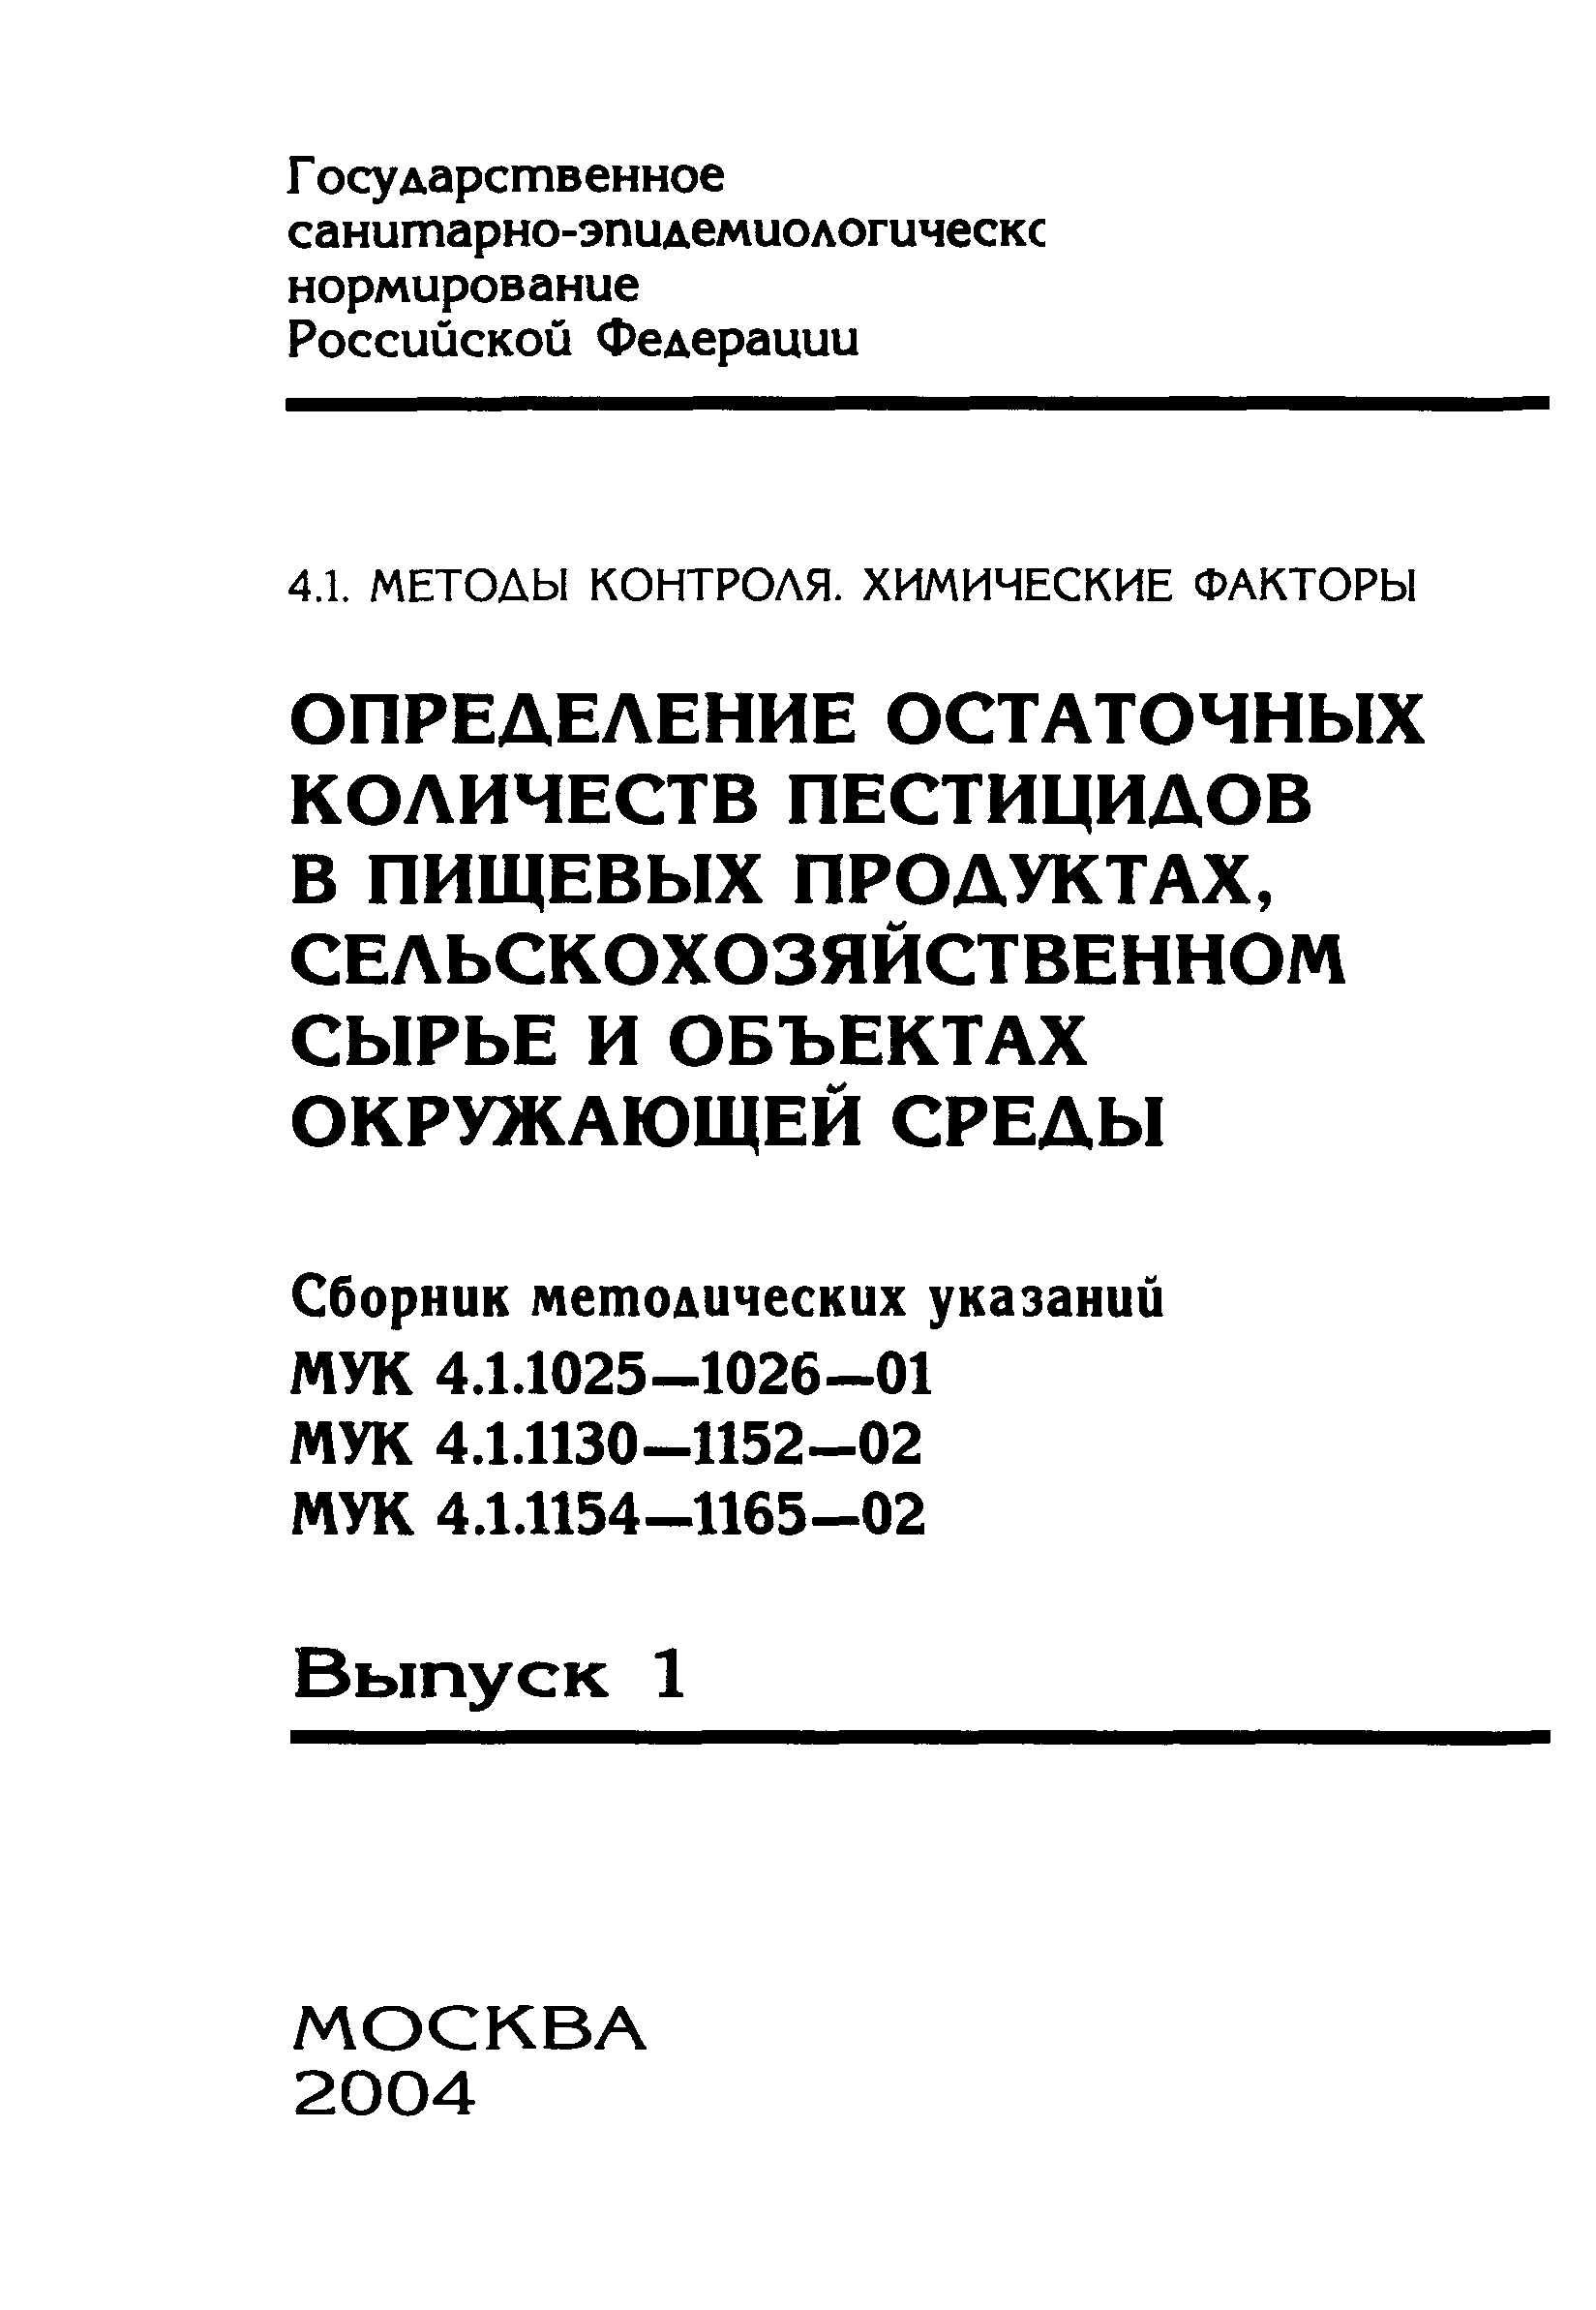 МУК 4.1.1149-02